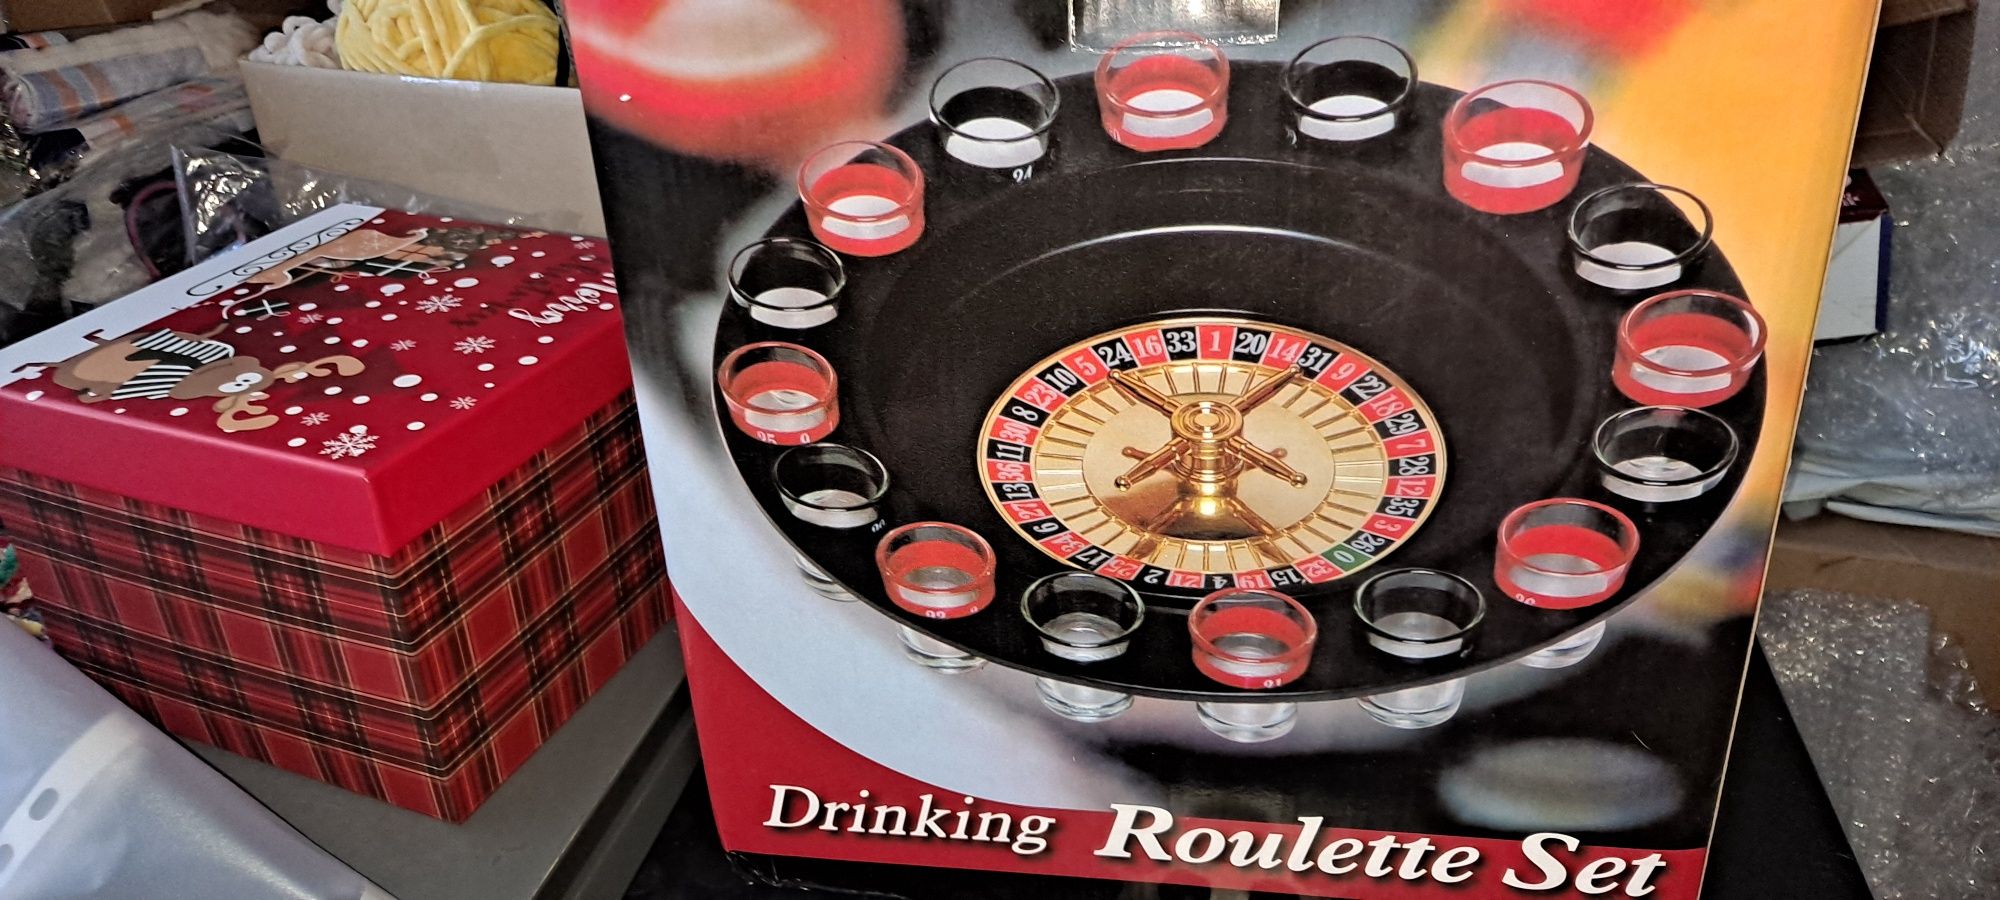 gra ruletka alkoholowa idealna na 18 urodziny sylwestra